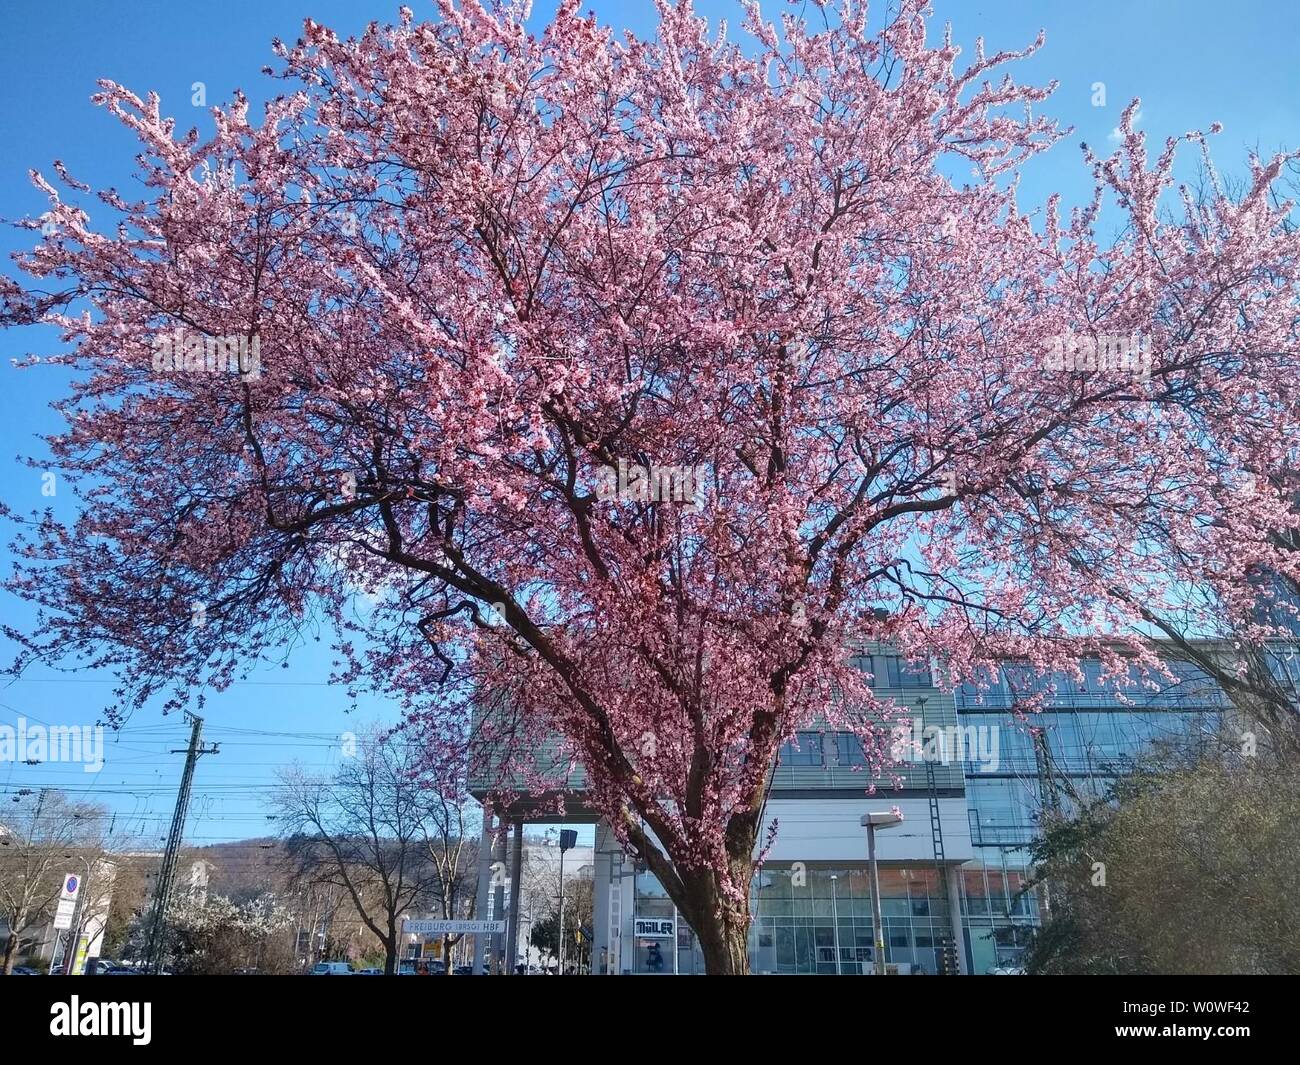 Kirschbaumblüete zum Frühlingsanfang. Wie hier in Freiburg im Breisgau hält Frühling Einzug. Bei einem fast wolkenlosen Himmel stehen die Kirschbäume in voller Blüte  Themenbild Frühling 2019 Stock Photo